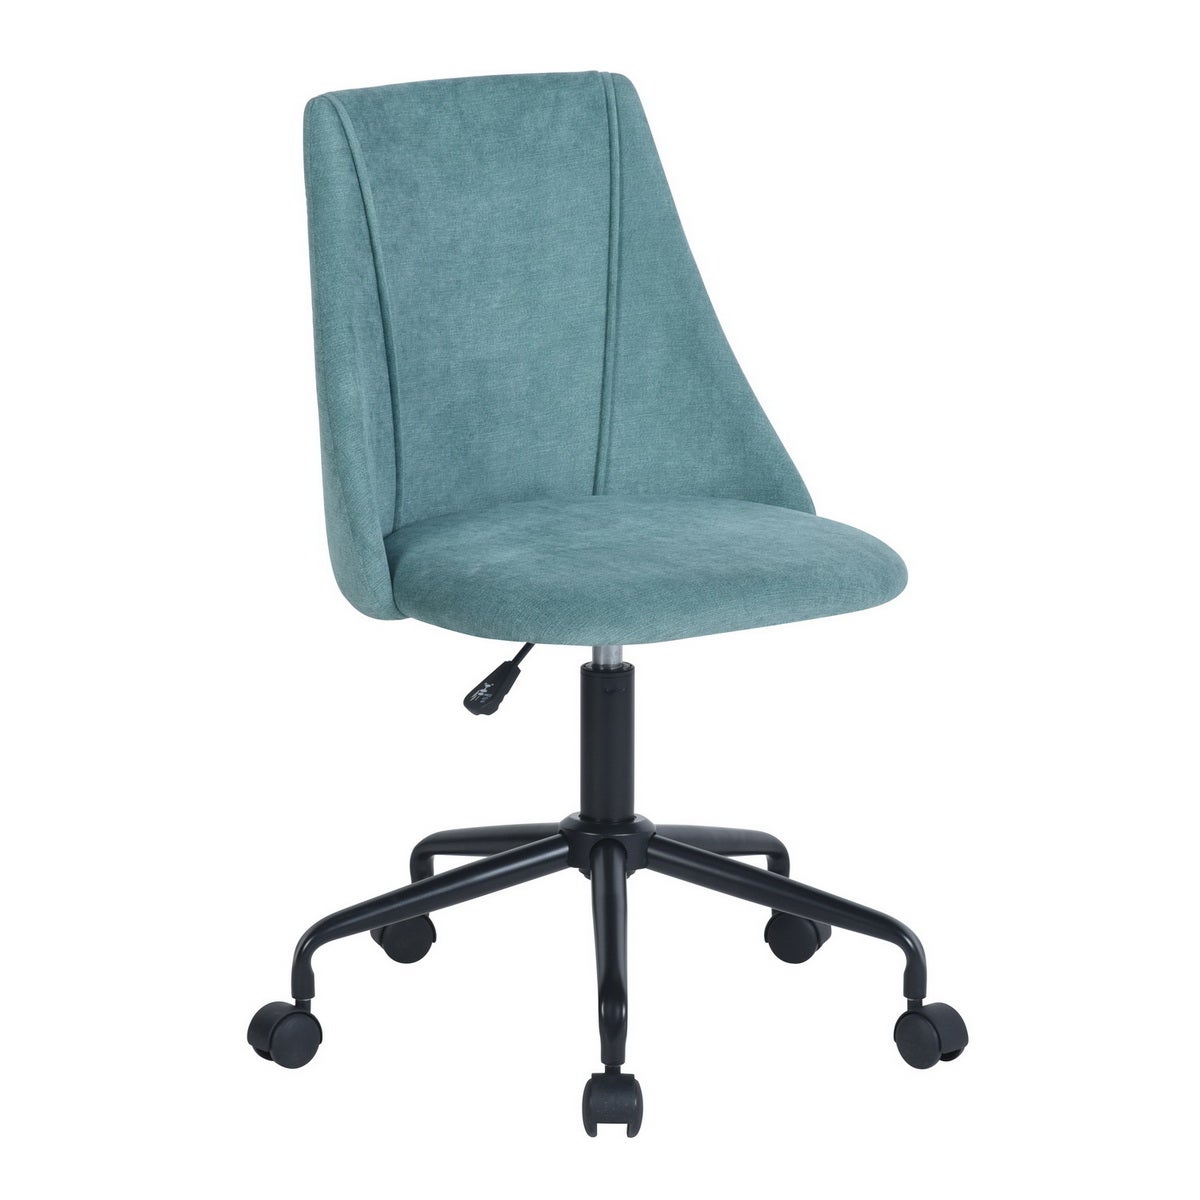 URBAN MEUBLE Chaise de bureau scandinave blanc pivotant réglable hauteur  d'assise pas cher 